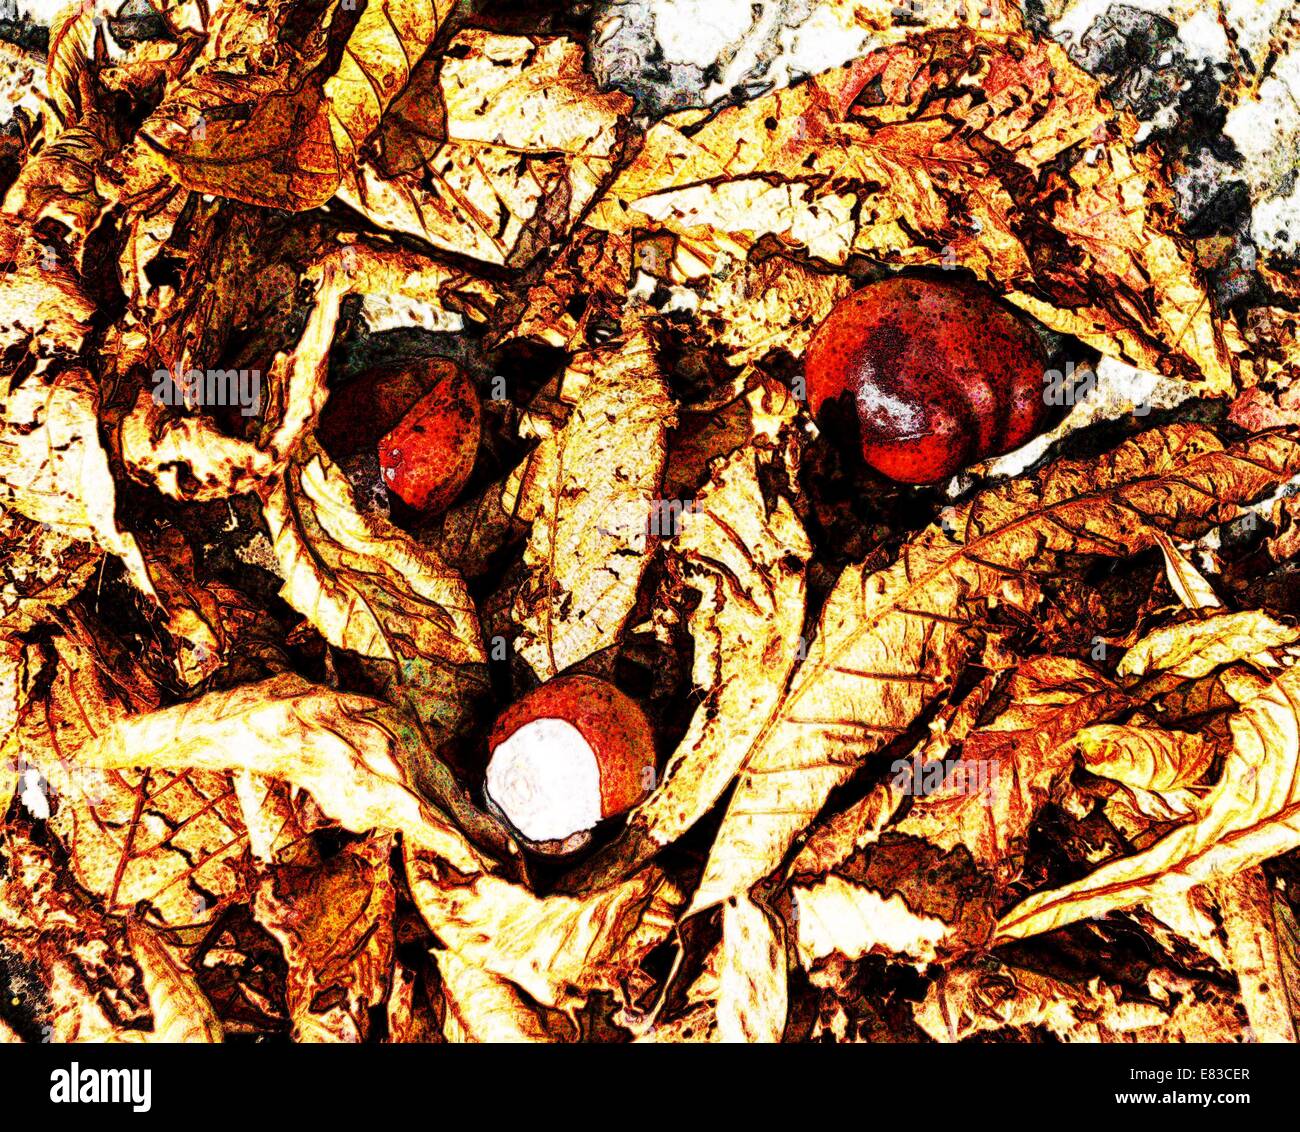 Conkers et marronnier de feuilles d'arbres sur le sol en automne Banque D'Images